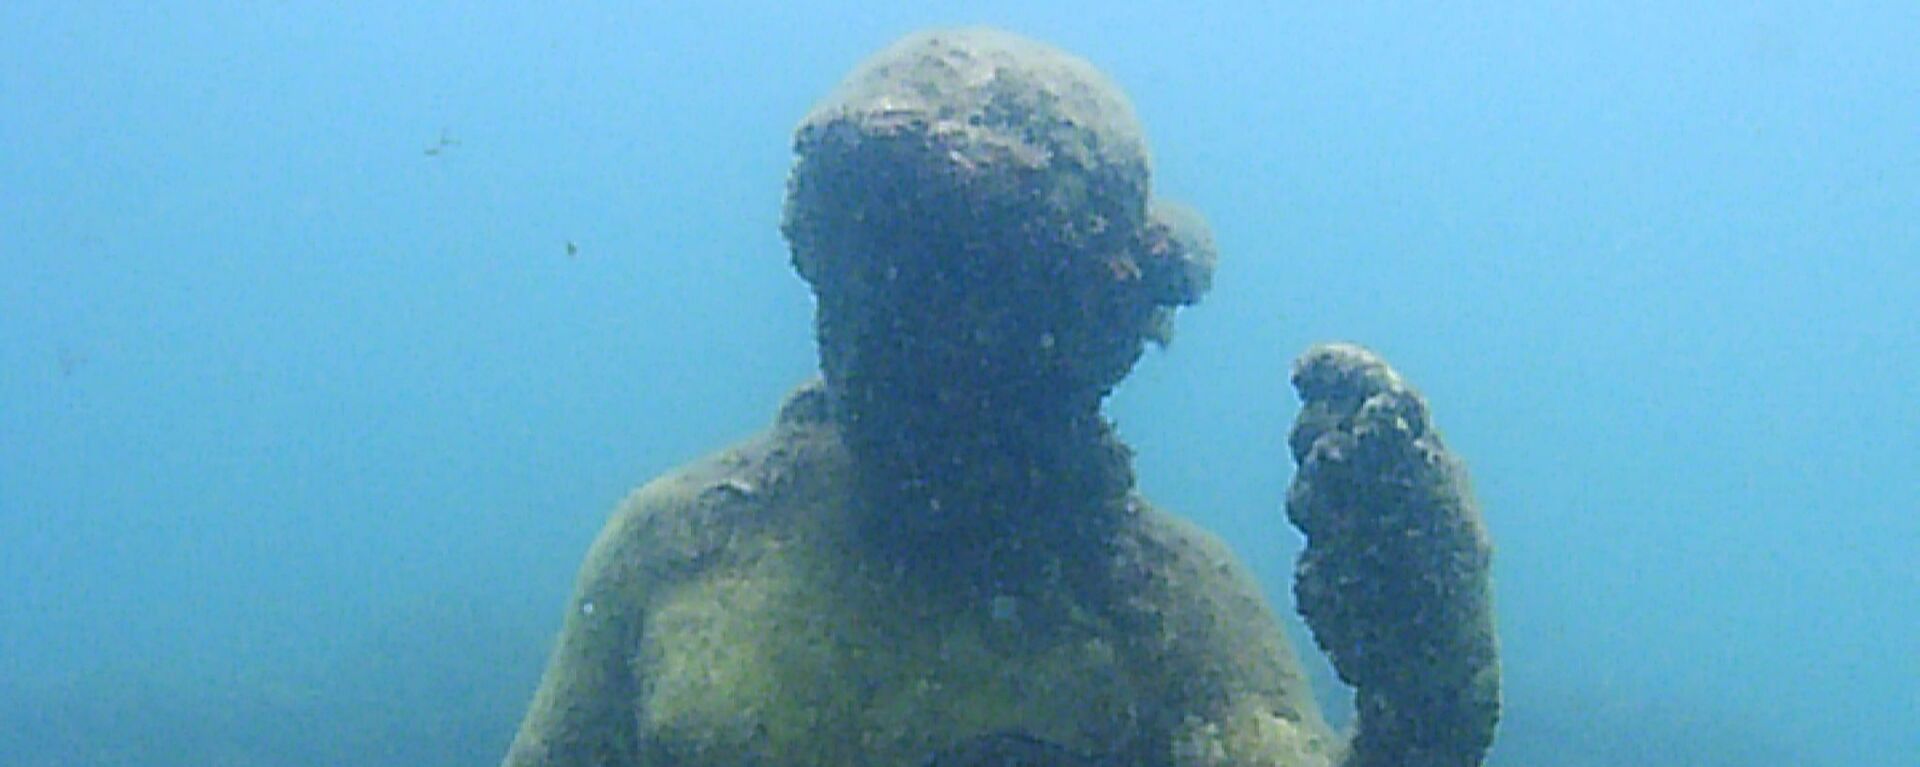 Статуя в затопленном археологическом парке Байи - Sputnik Արմենիա, 1920, 30.03.2021